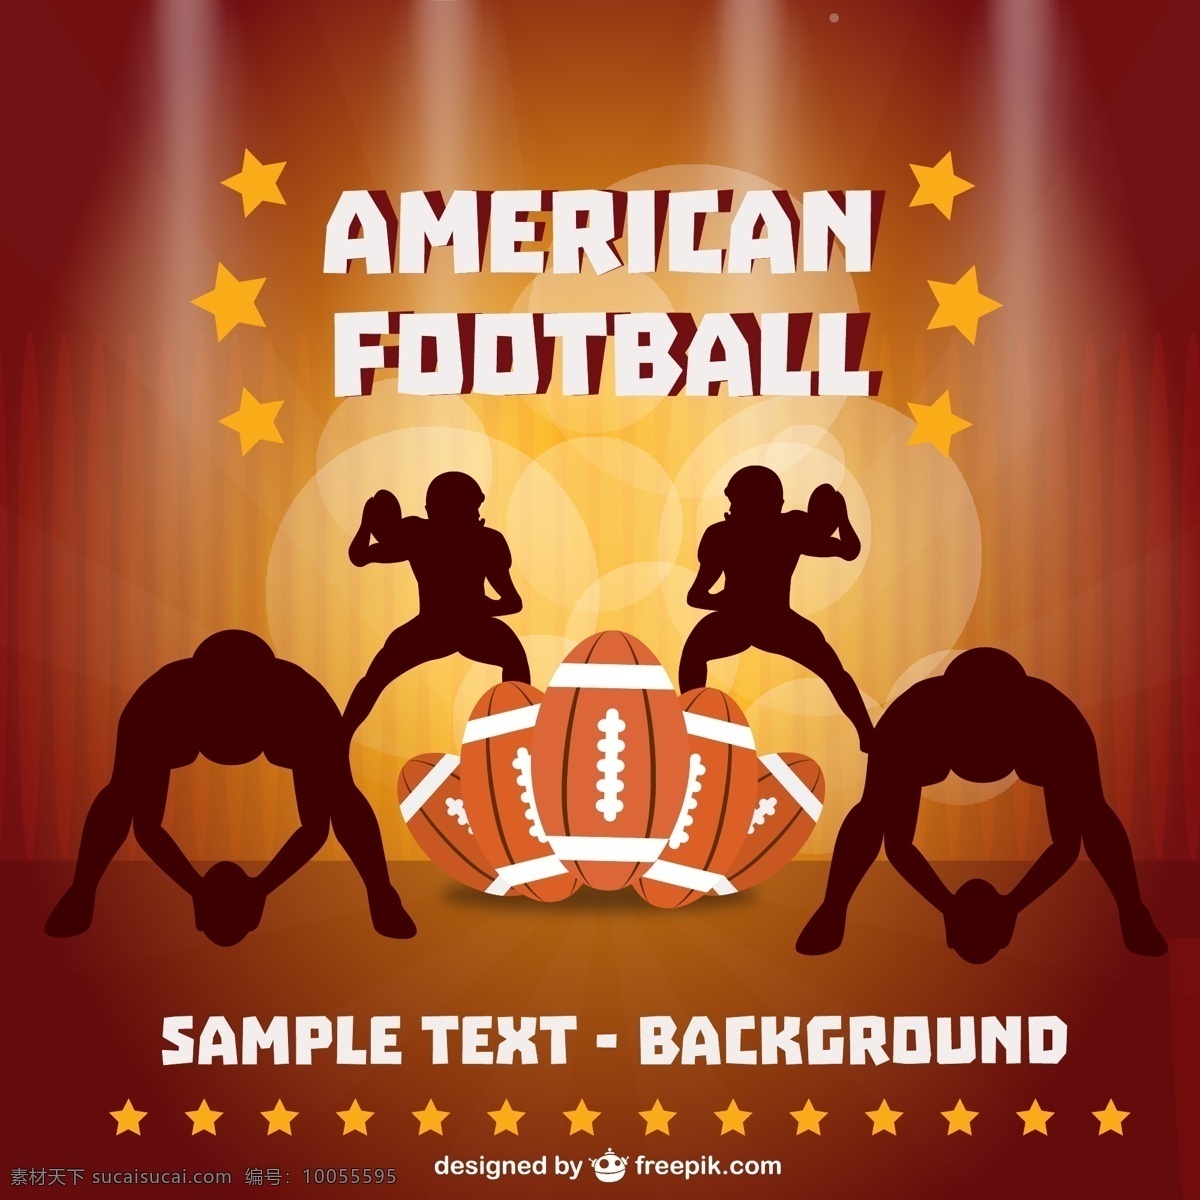 棕色 美式 足球 球员 轮廓 球和星星 背景 运动 蓝色背景 蓝色 艺术 壁纸 游戏 球 娱乐 插图 美国 美国足球 红色